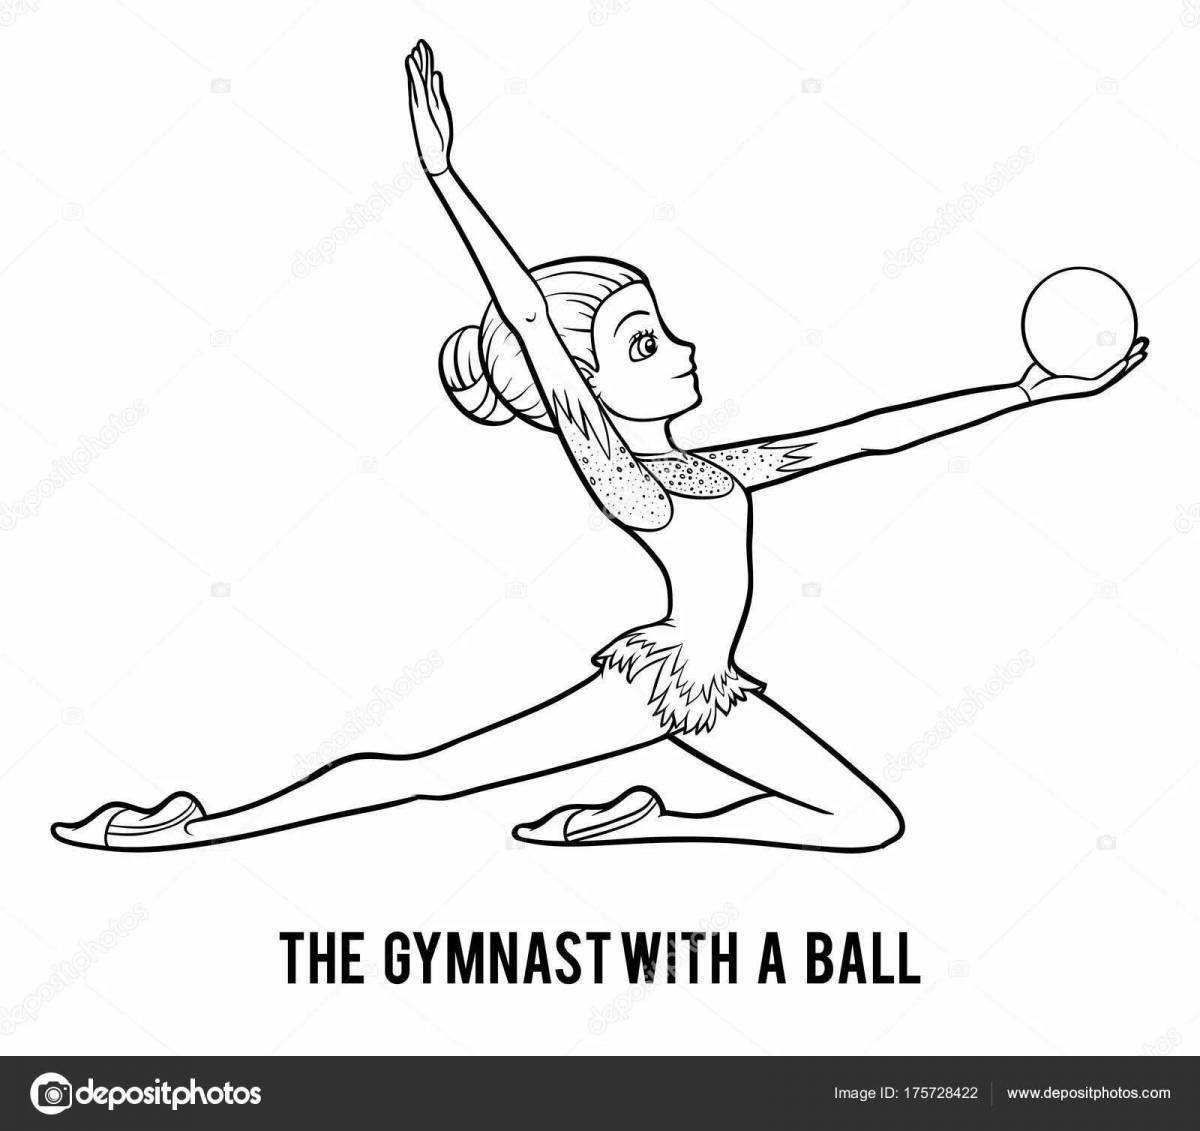 Endurance gymnast with ball